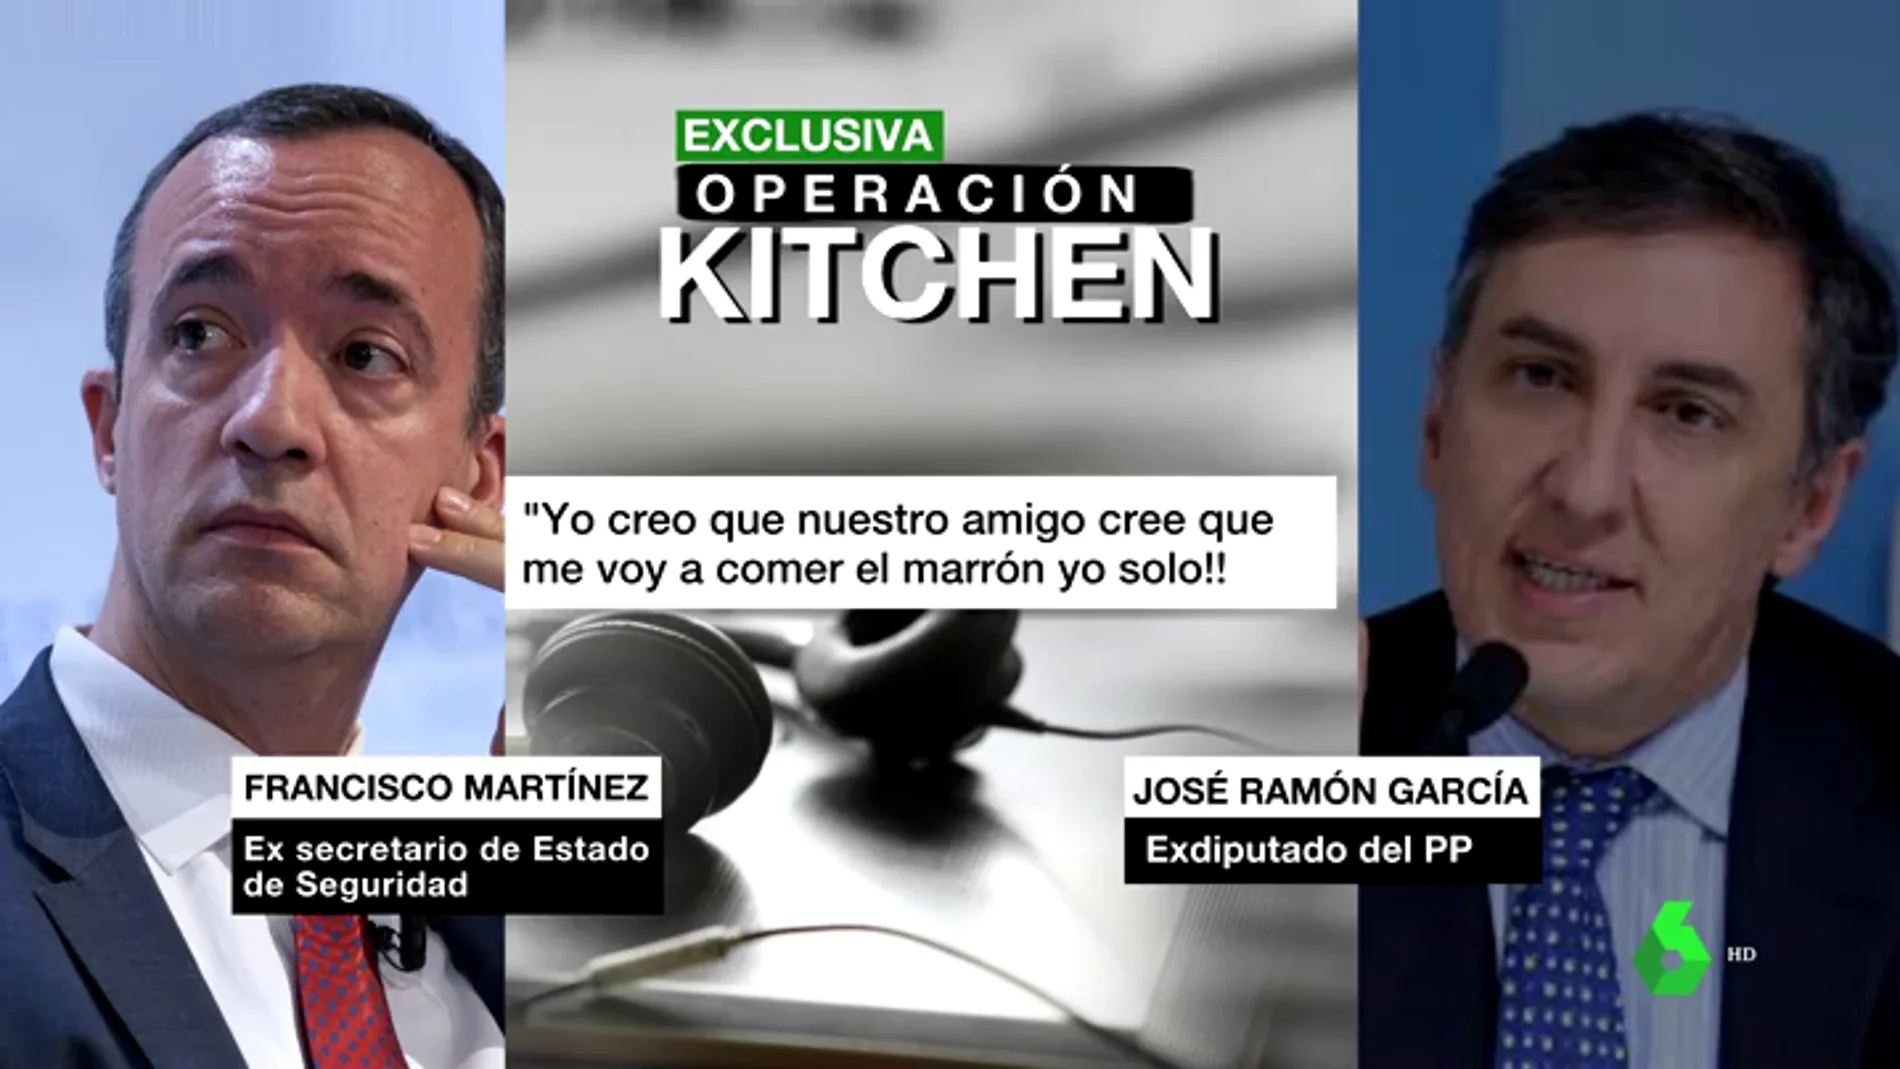 Exclusiva | Francisco Martínez culpabiliza a Rajoy de la Kitchen y le acusa junto a Fernández Díaz de querer que se coma él solo "el marrón"